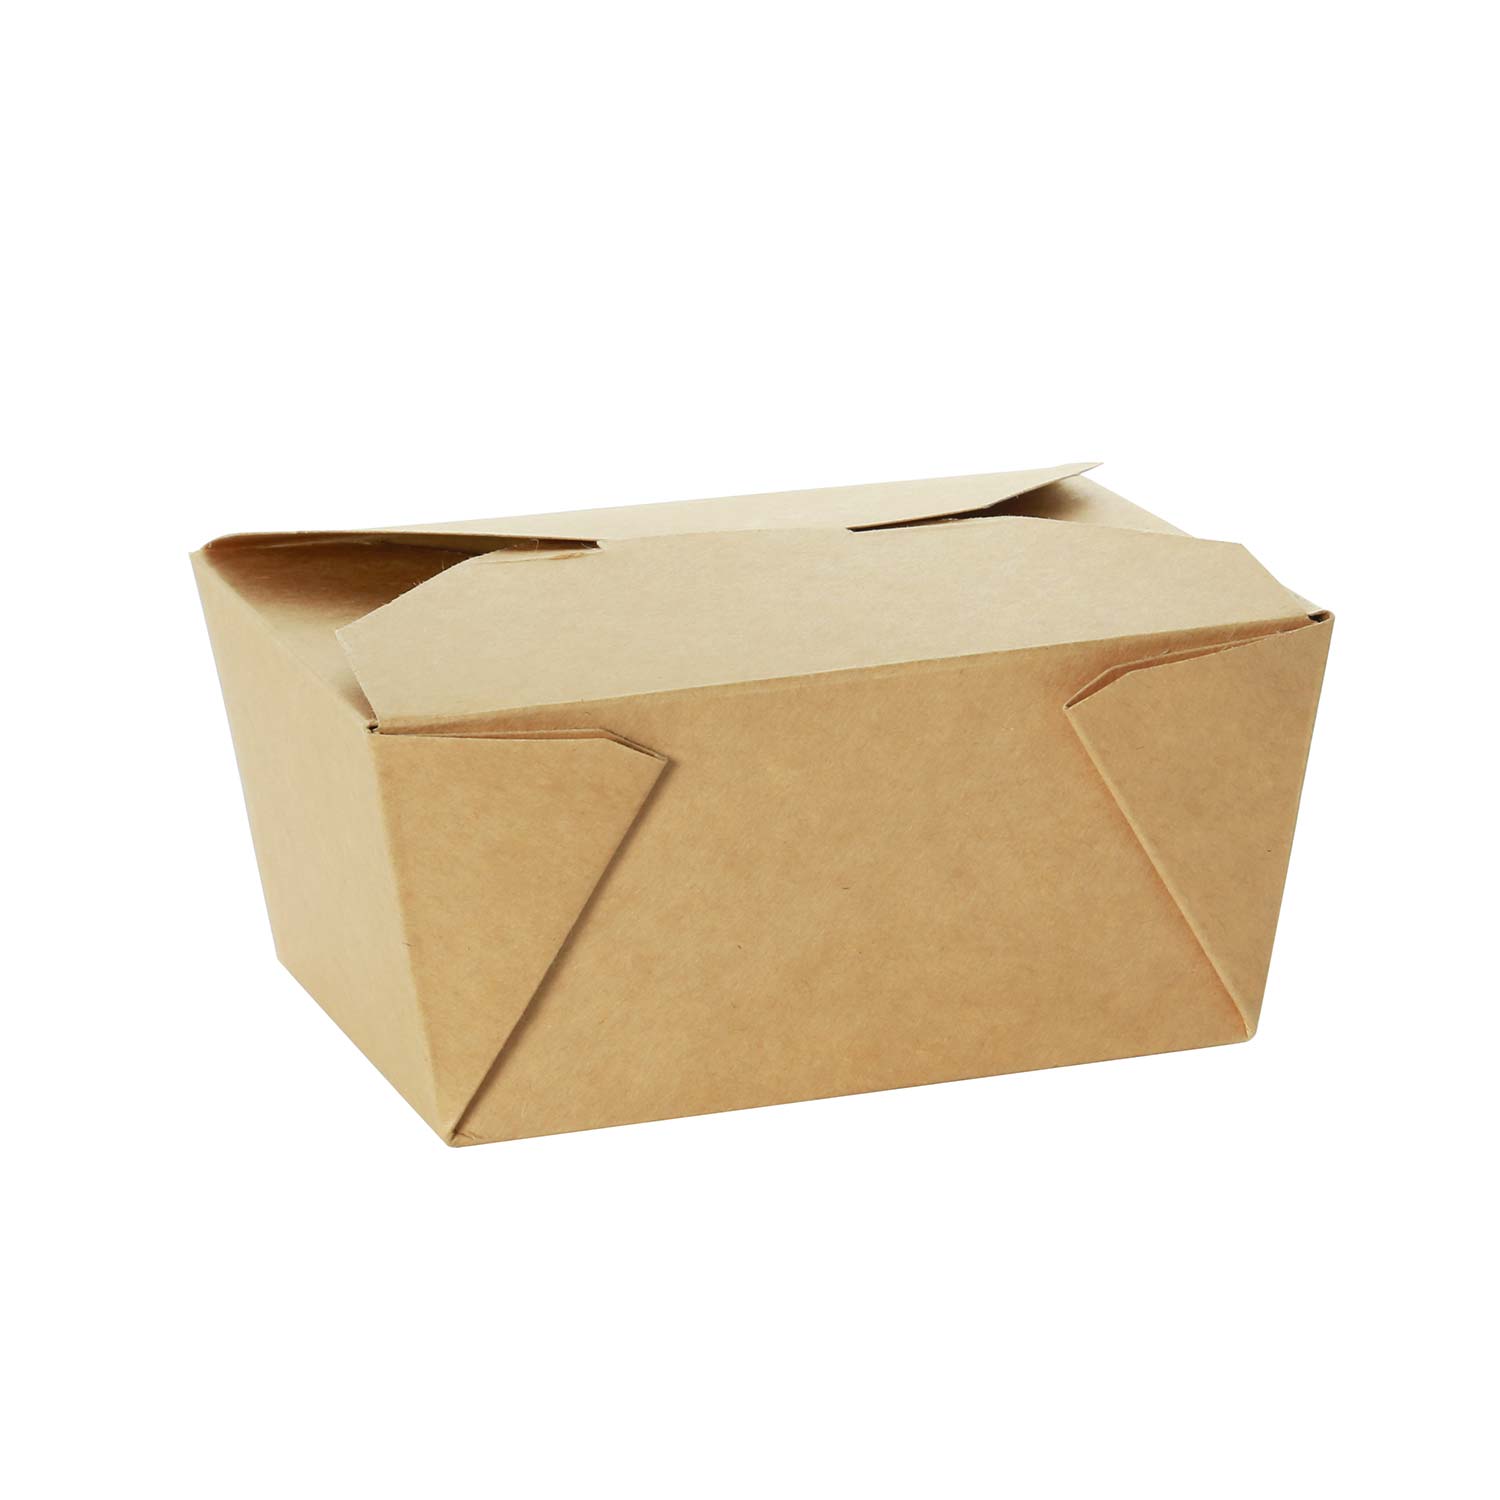 Boites De Carton - Papiers Et Emballages Arteau Montréal